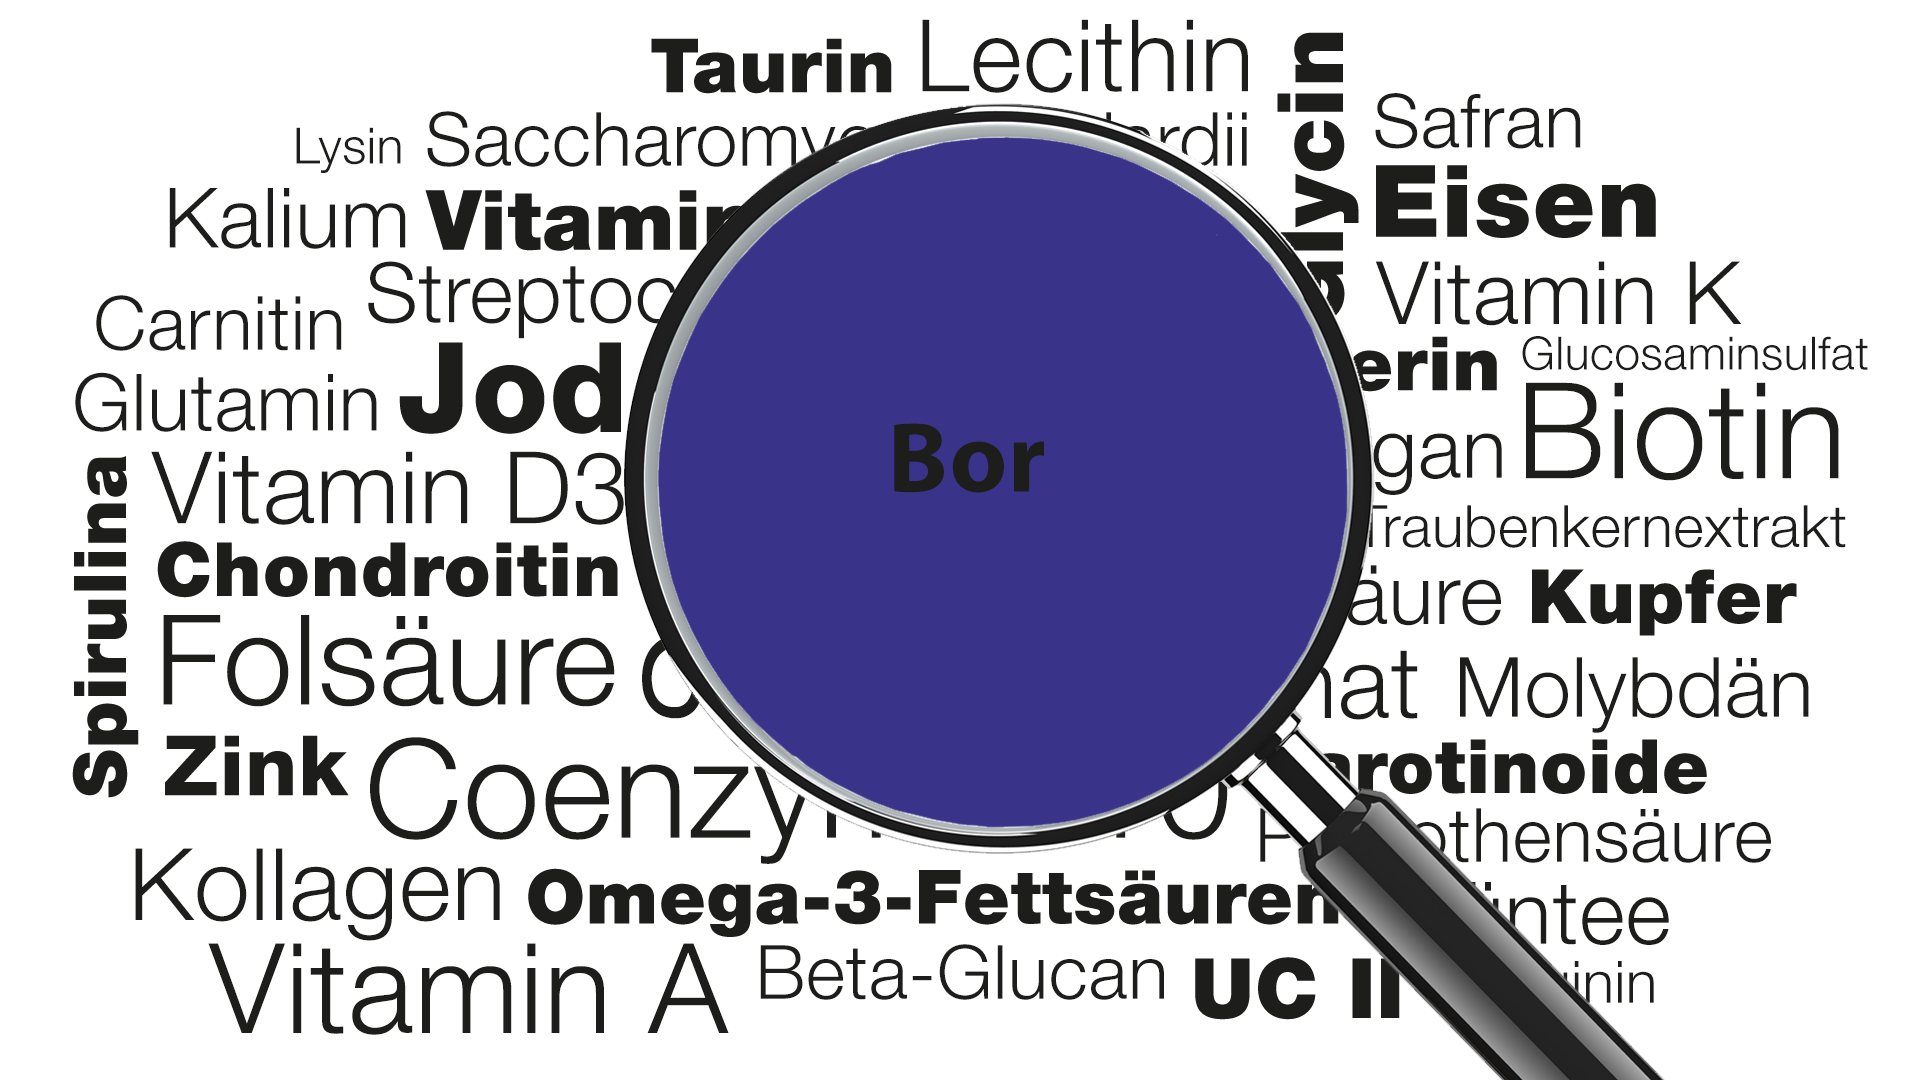 Lupe mit Wort Bor im Fokus » Wissenswertes zu Funktionen, Anwendungsgebieten, Mangel, Lebensmittelquellen uvm.